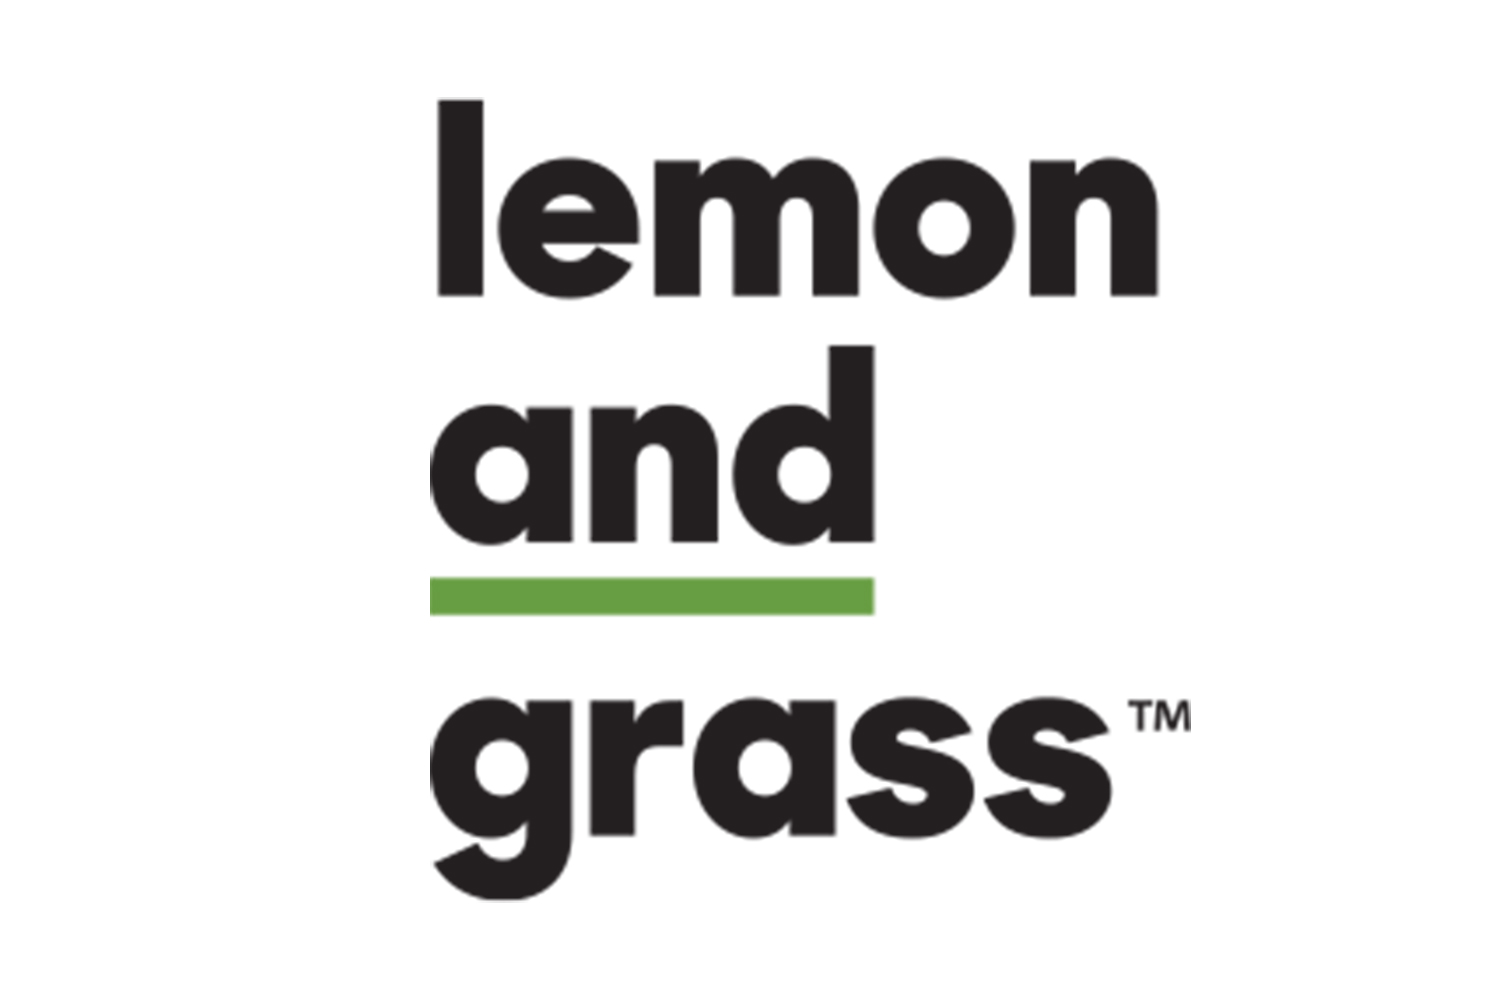 lemon-and-grass